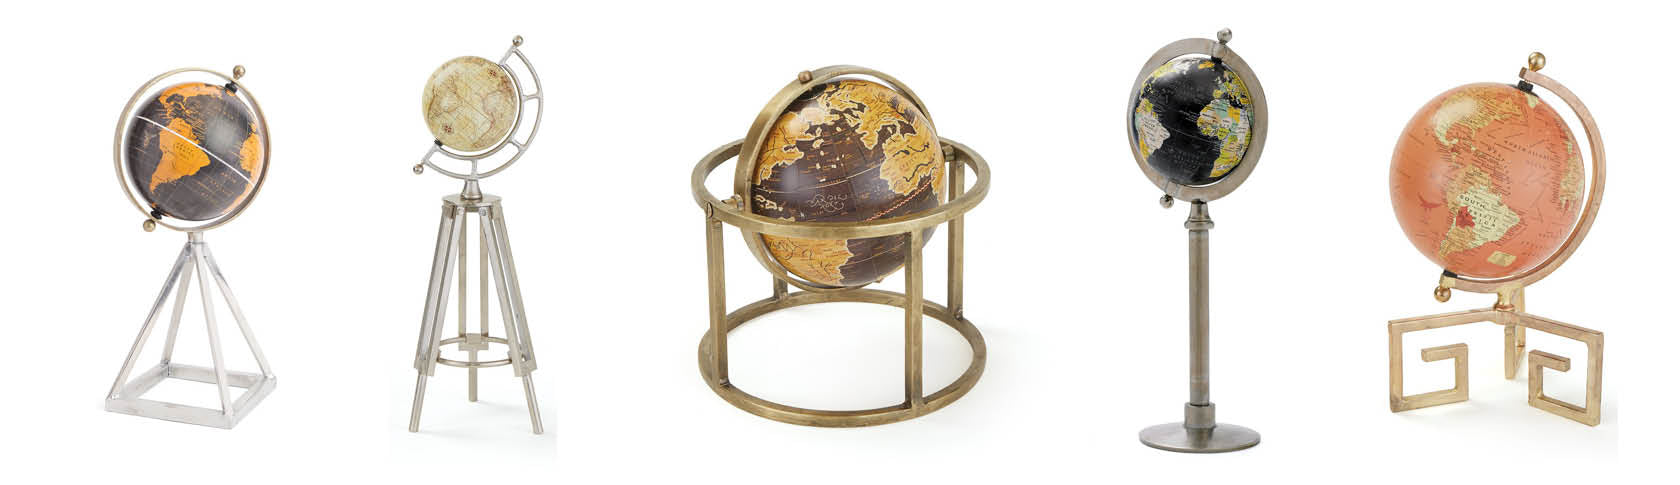 contemporary globes